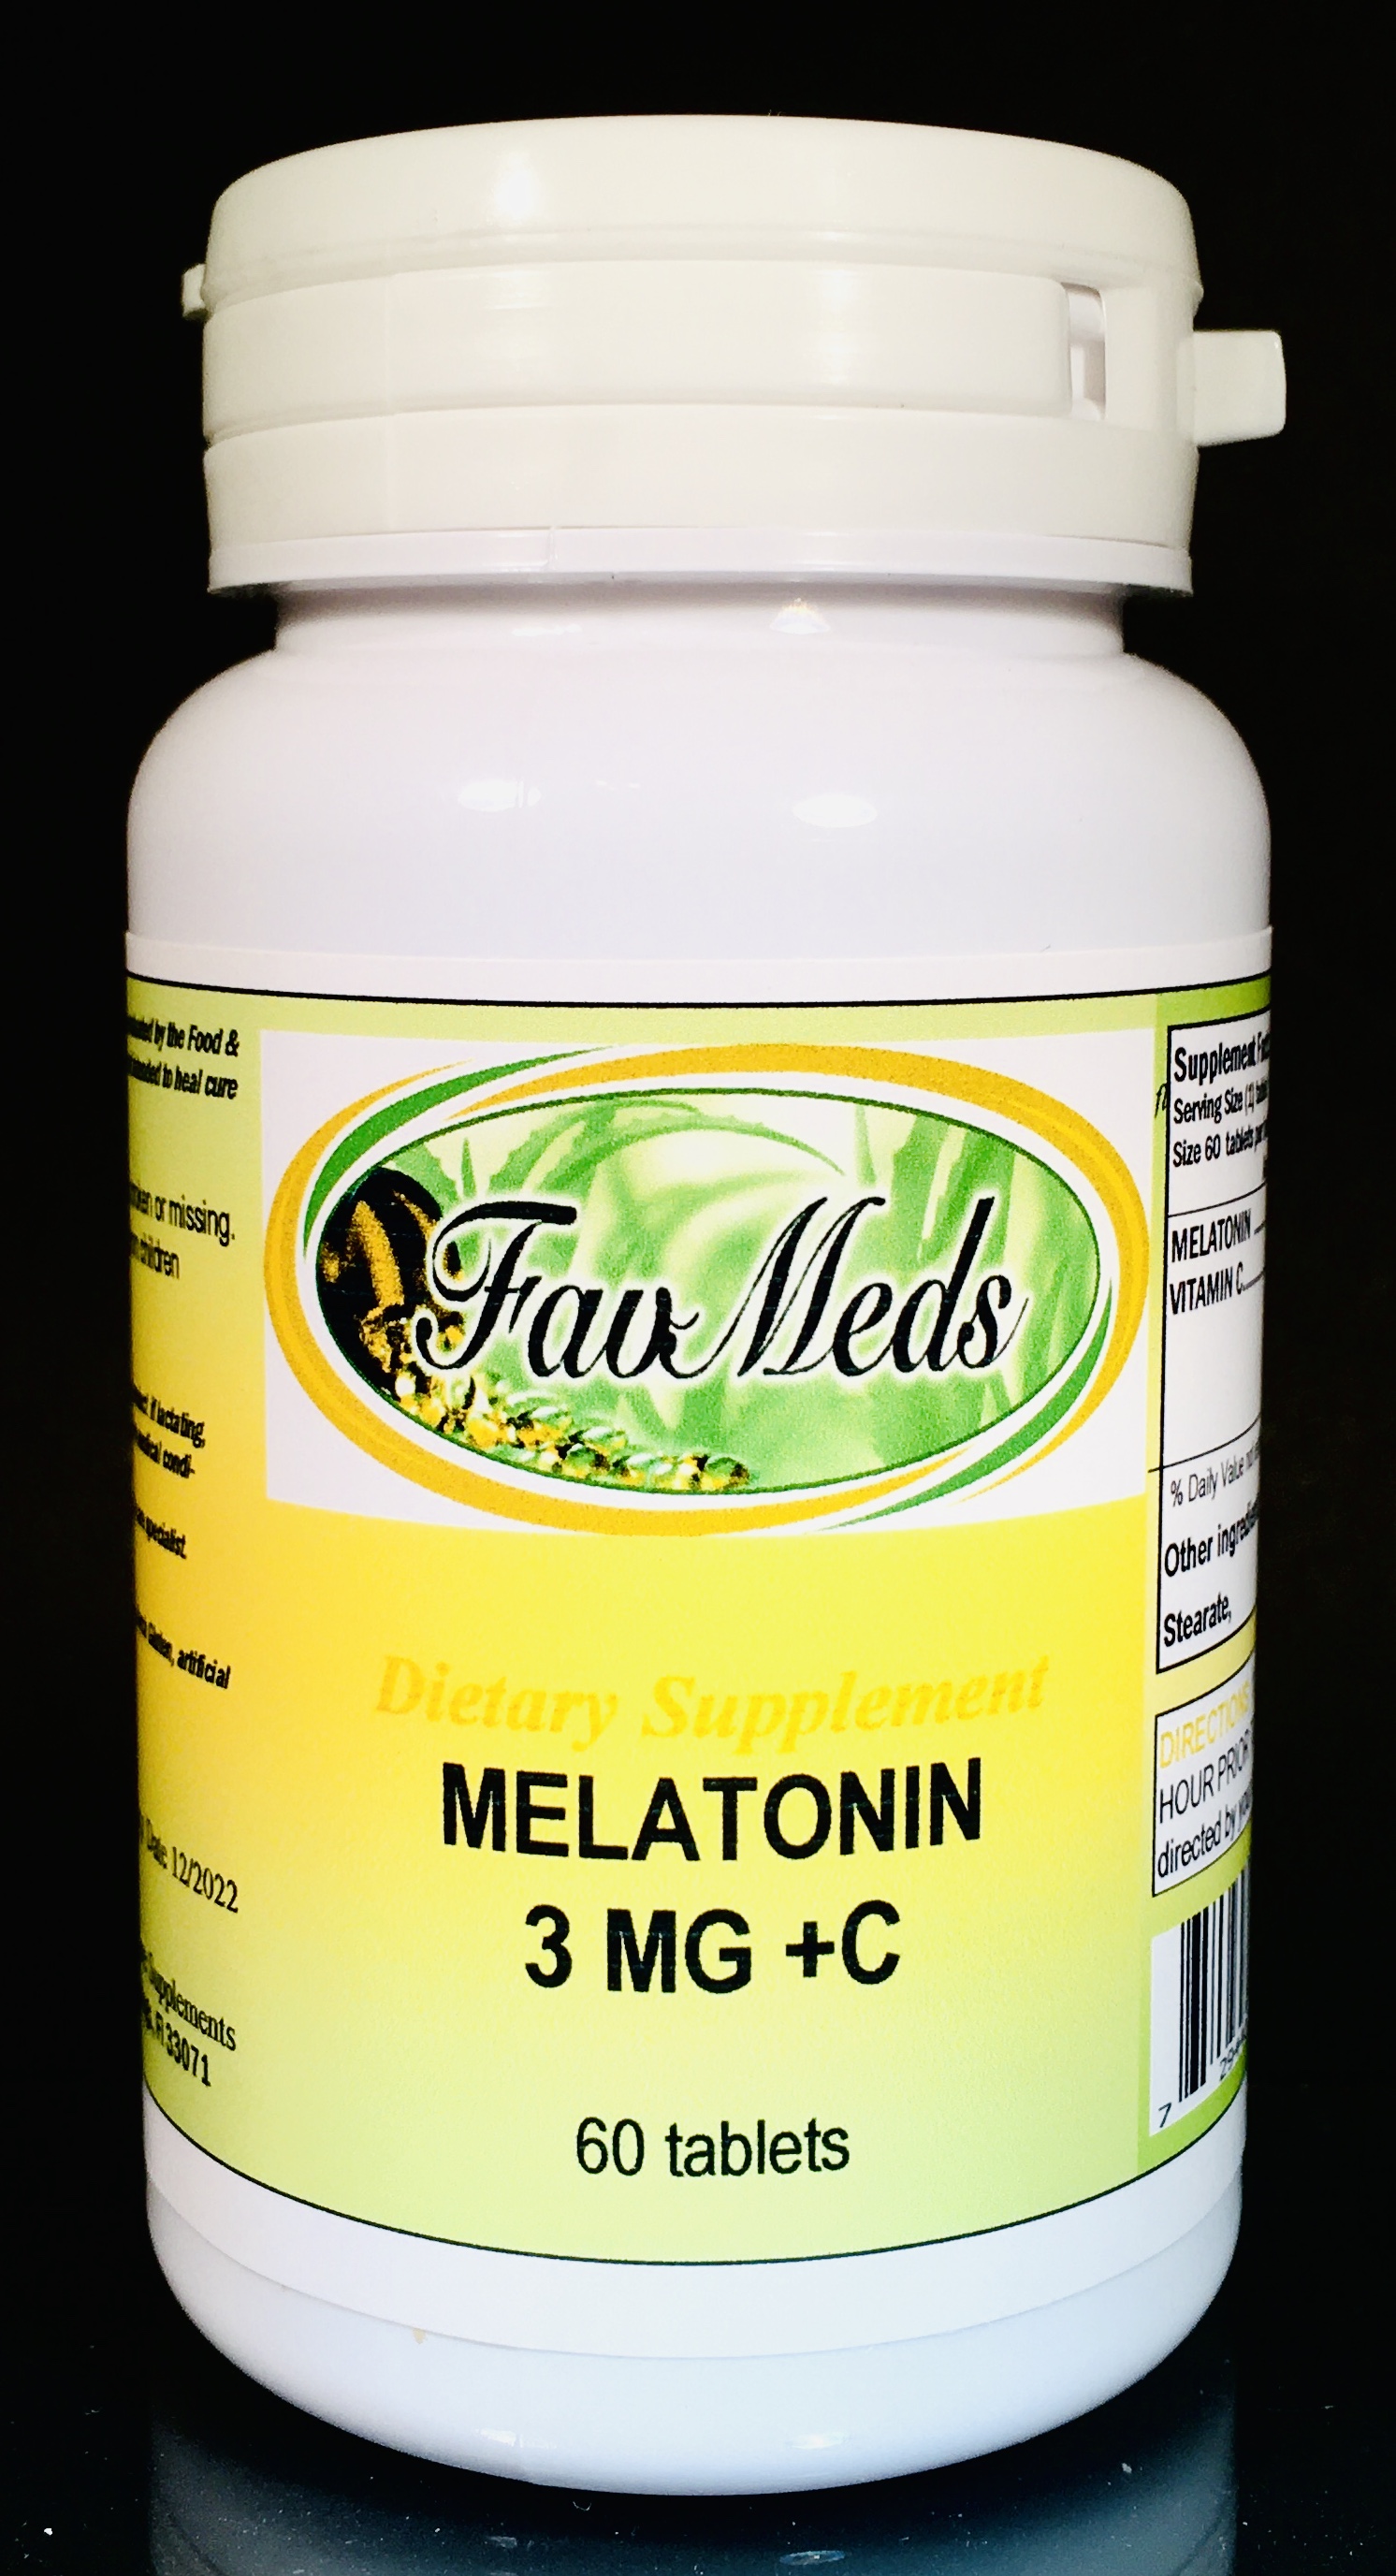 Melatonin 3mg - 60 tablets